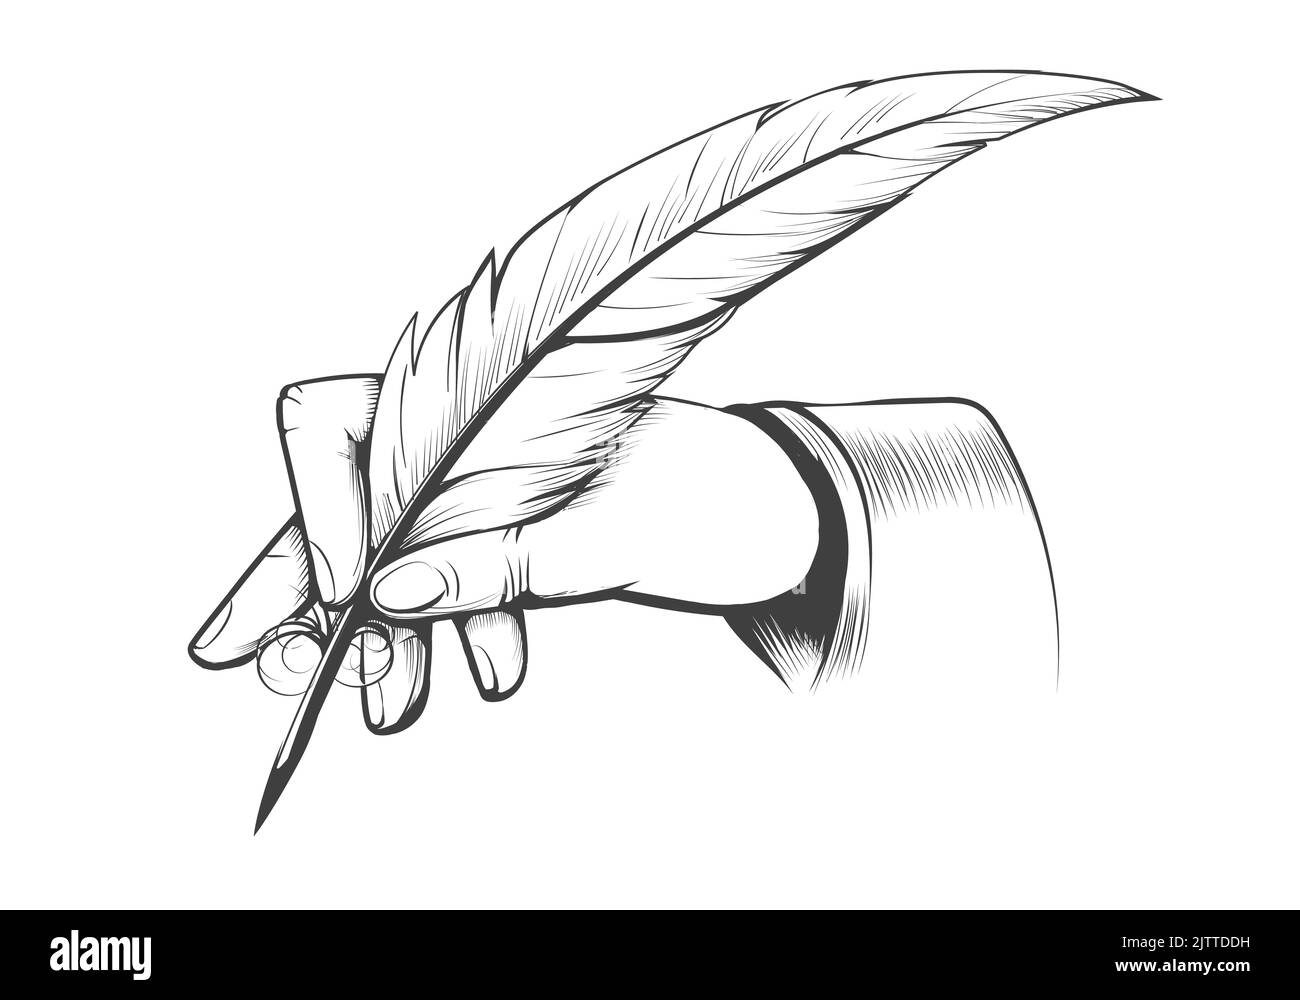 La mano tiene una penna Quill Feather disegnata in stile incisione isolata su bianco. Illustrazione vettoriale Illustrazione Vettoriale